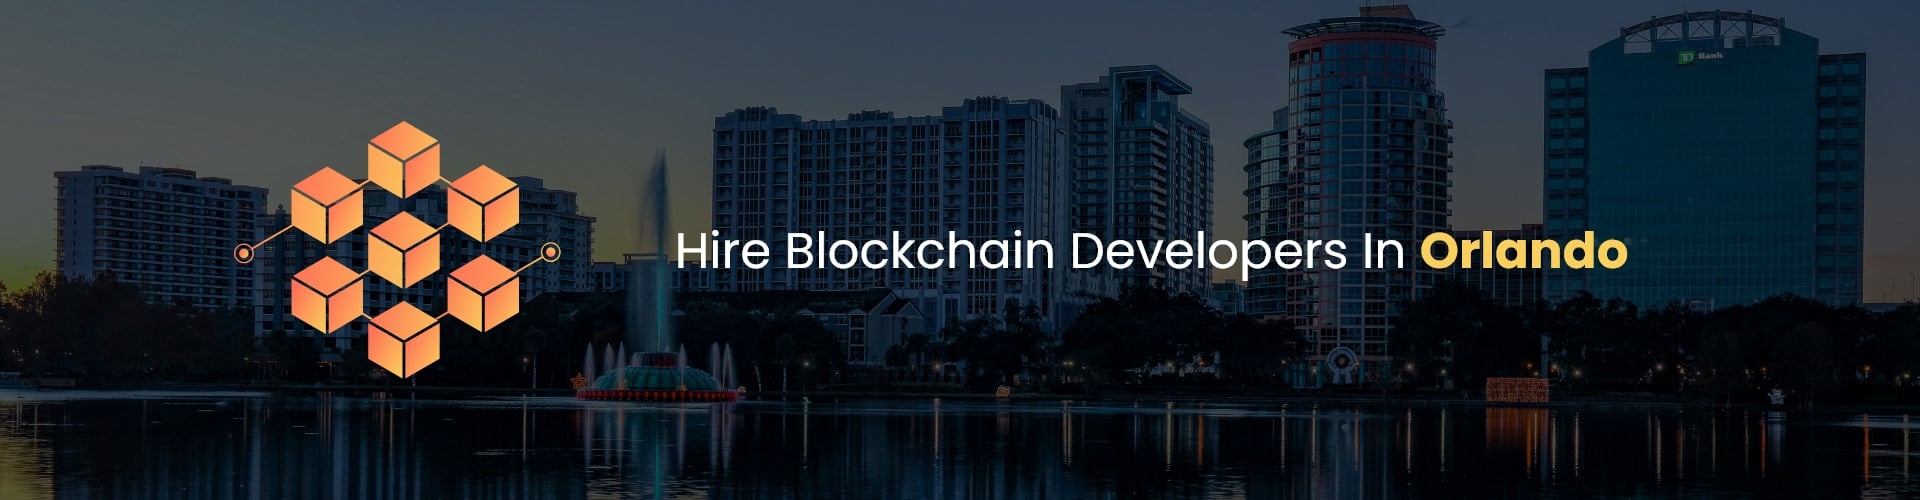 hire blockchain developers in orlando